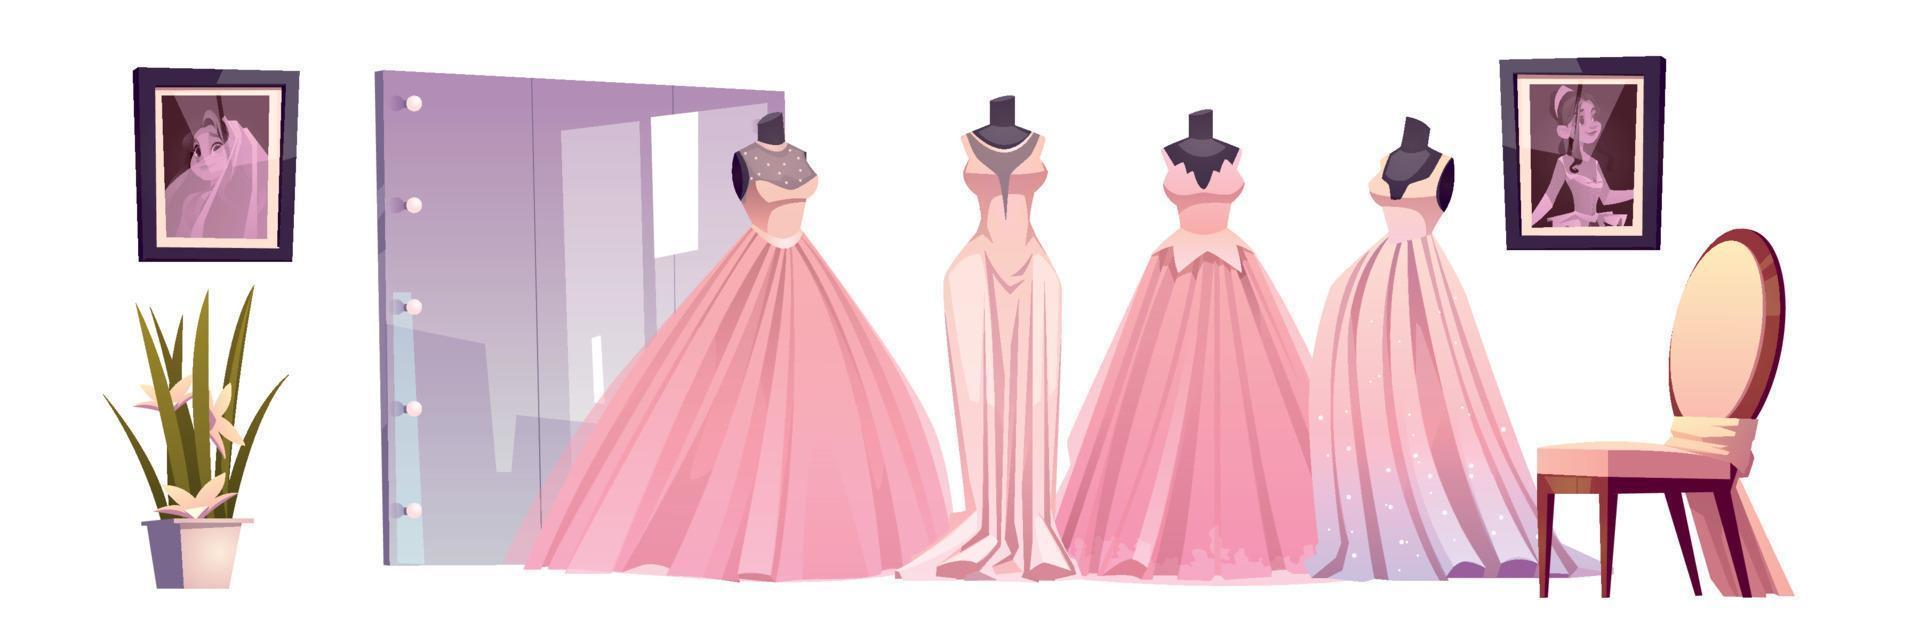 luxe bruid jurken in bruiloft winkel vector